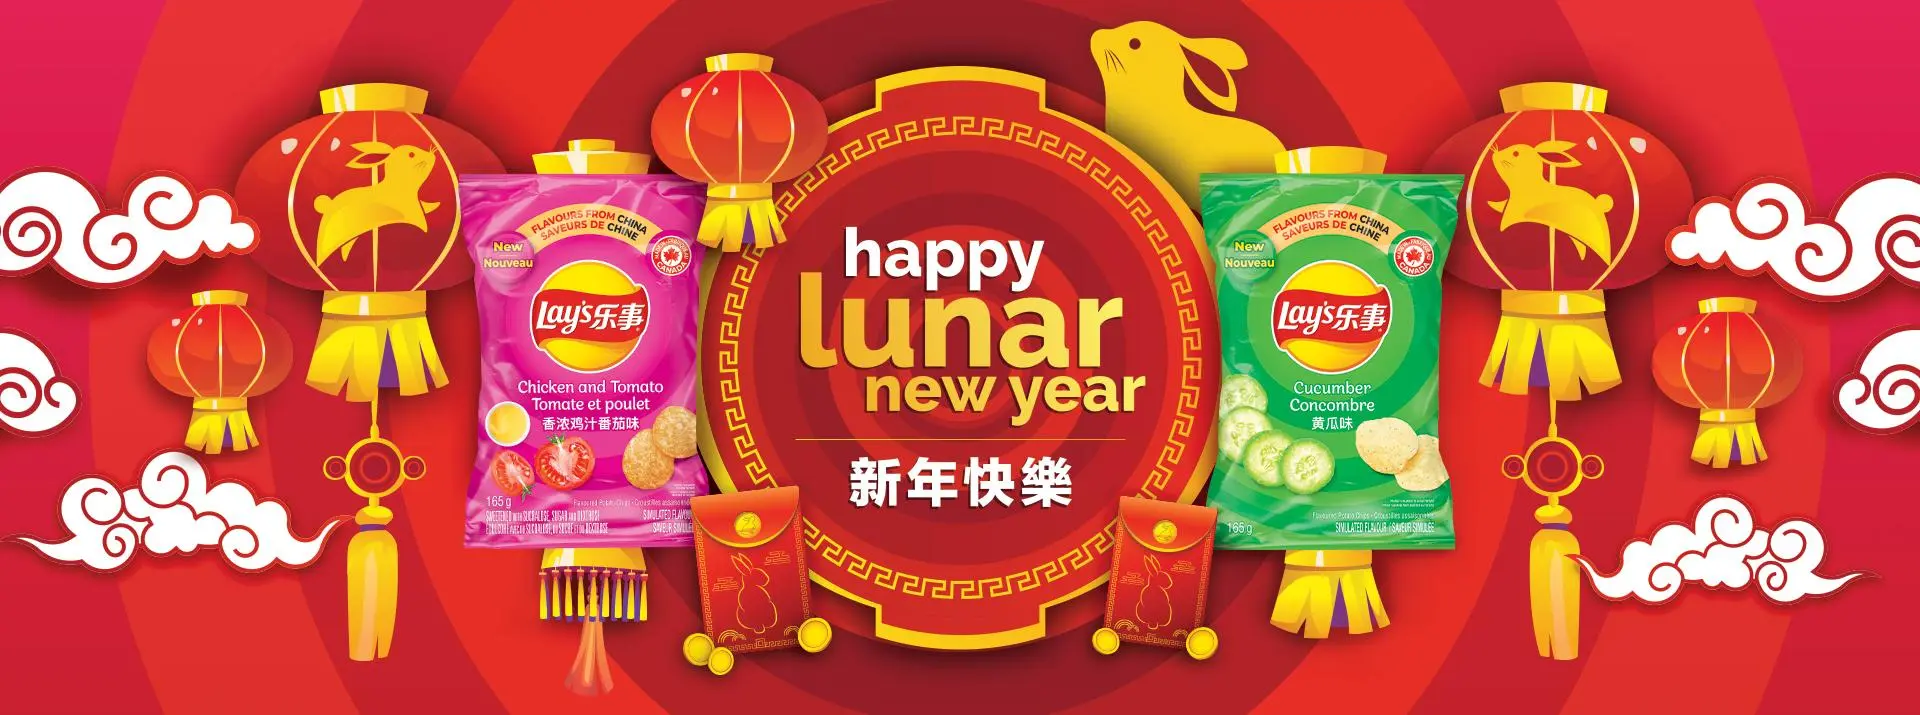 Lunar Year Banner